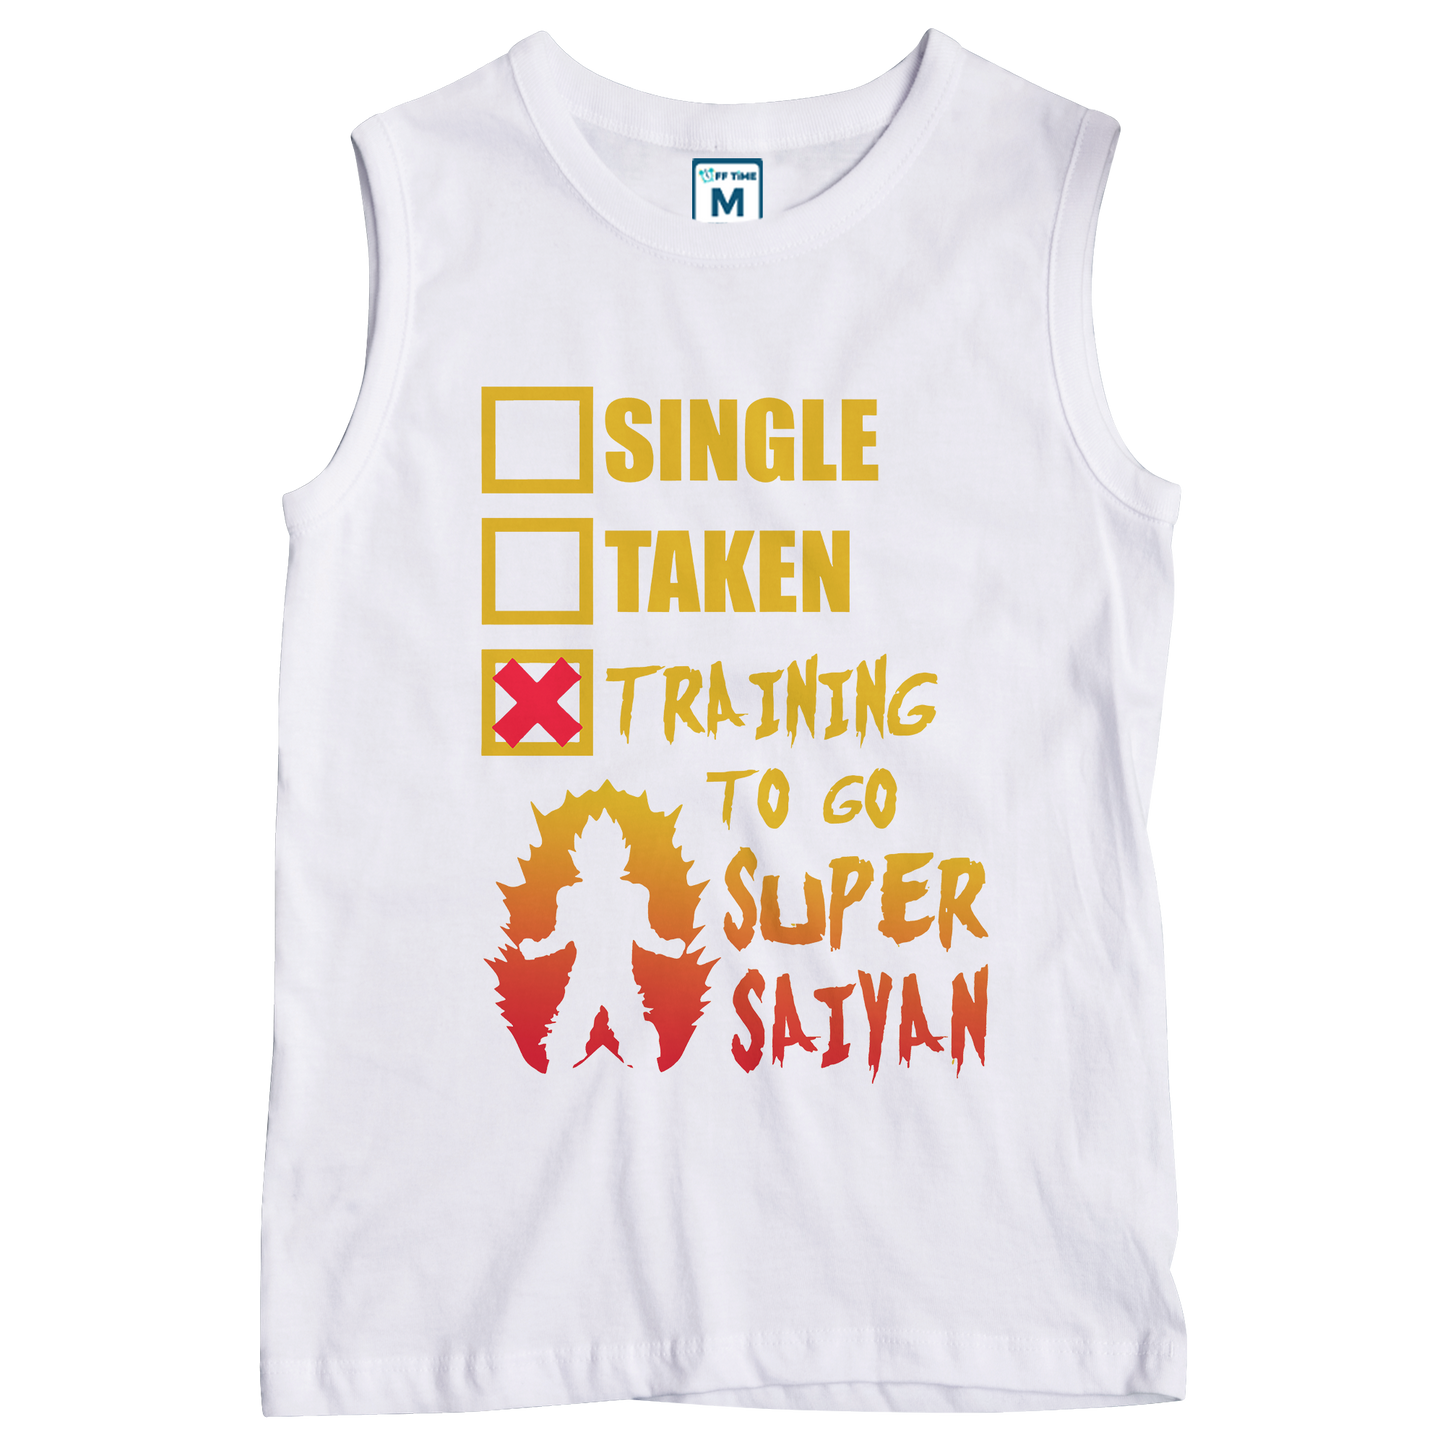 Sleeveless Drifit Shirt: Training Super Saiyan